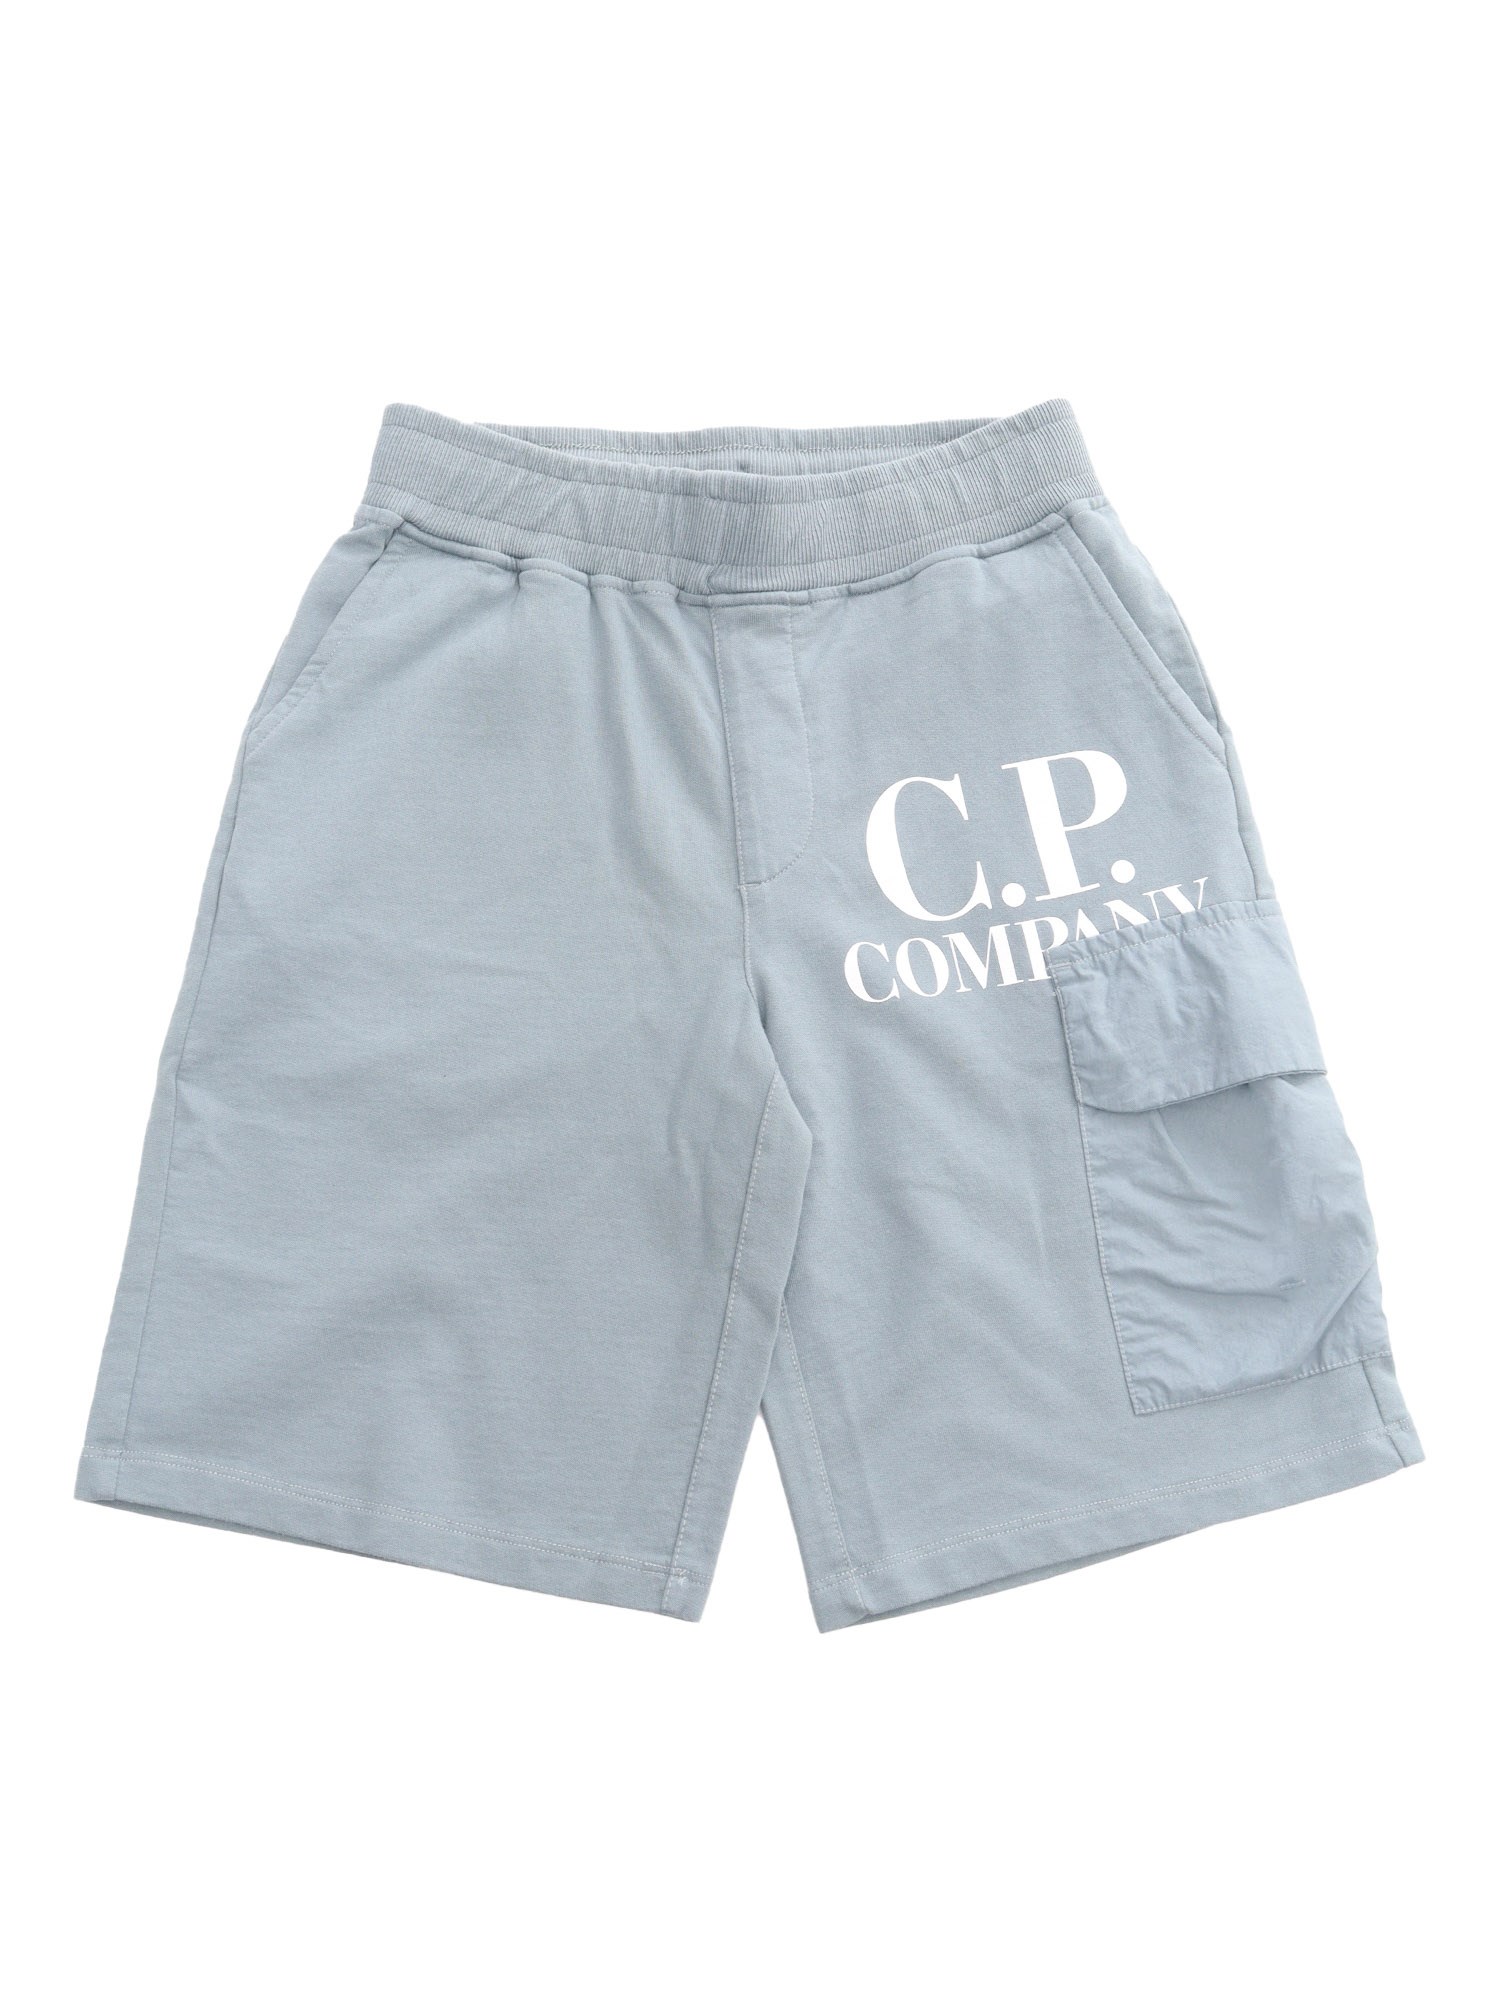 C.p. Company Gray Shorts